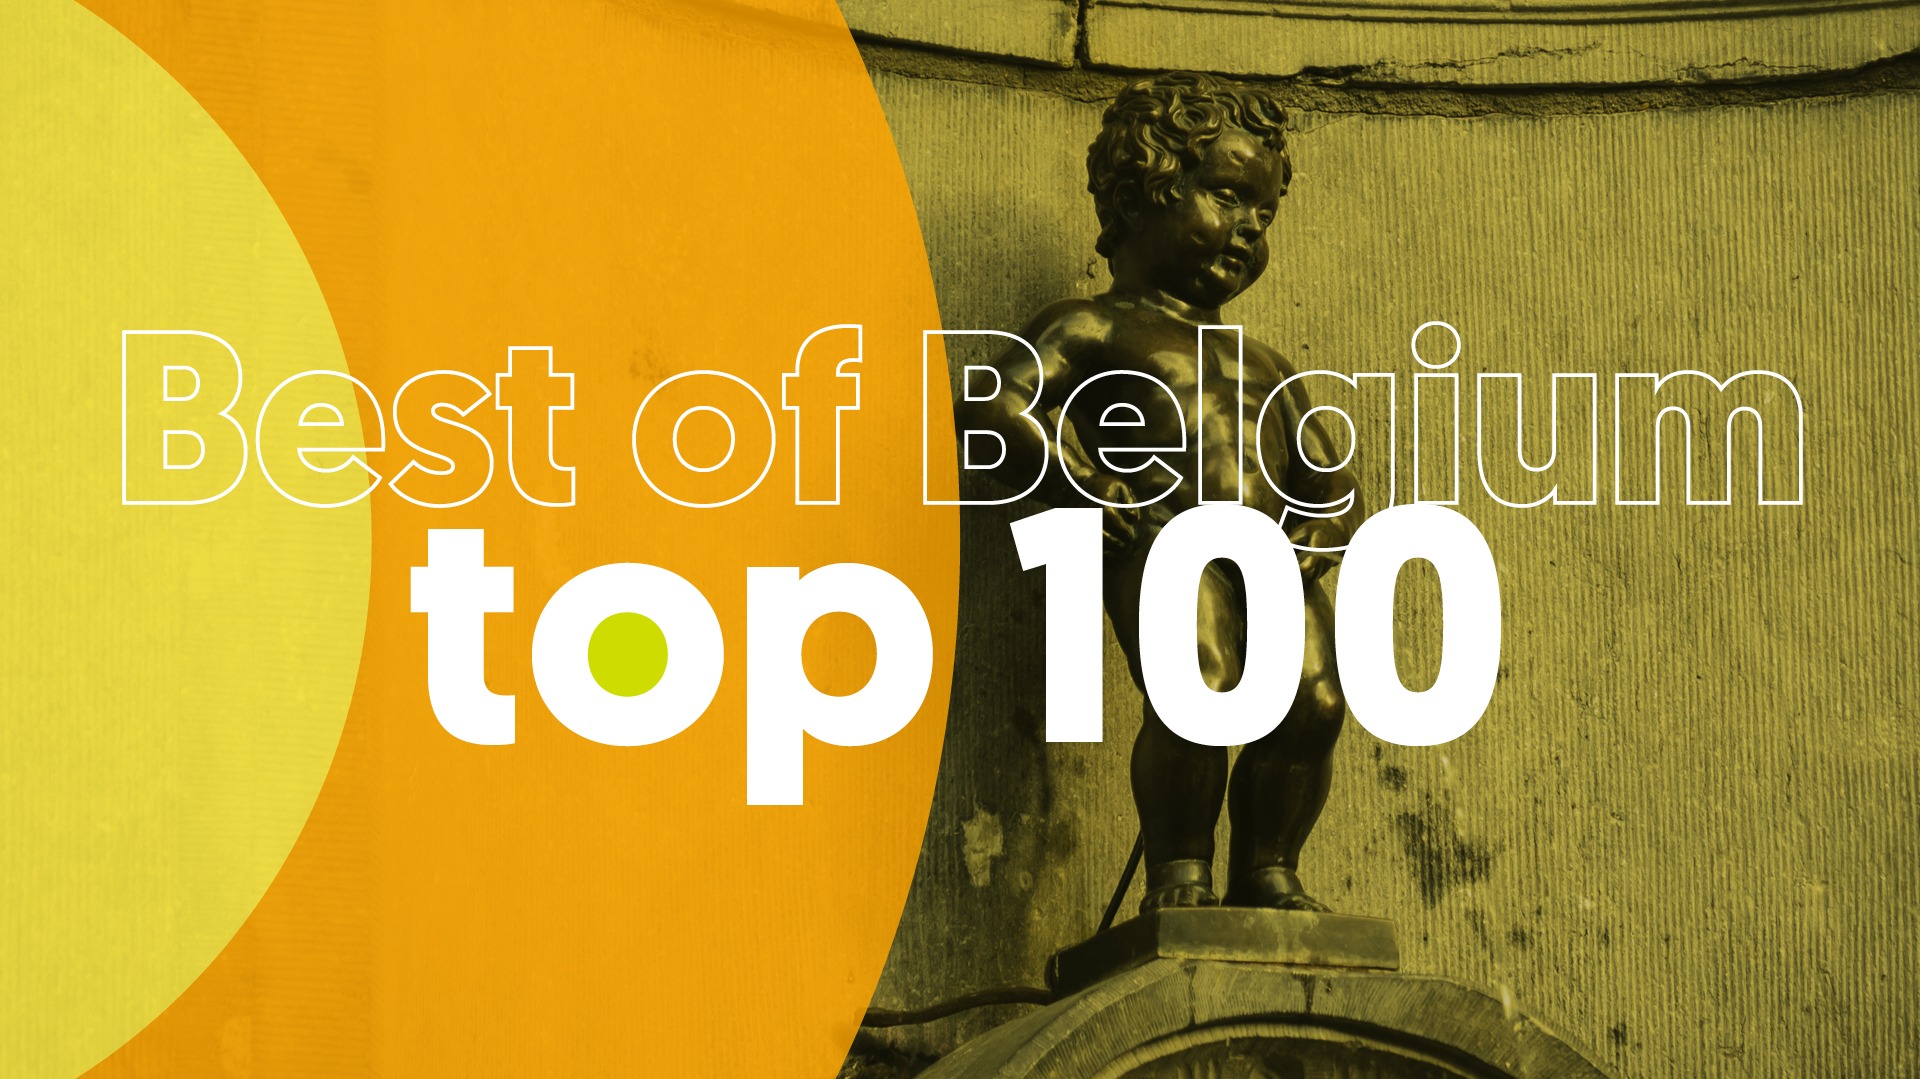 Hitlijst website best of belgium 1